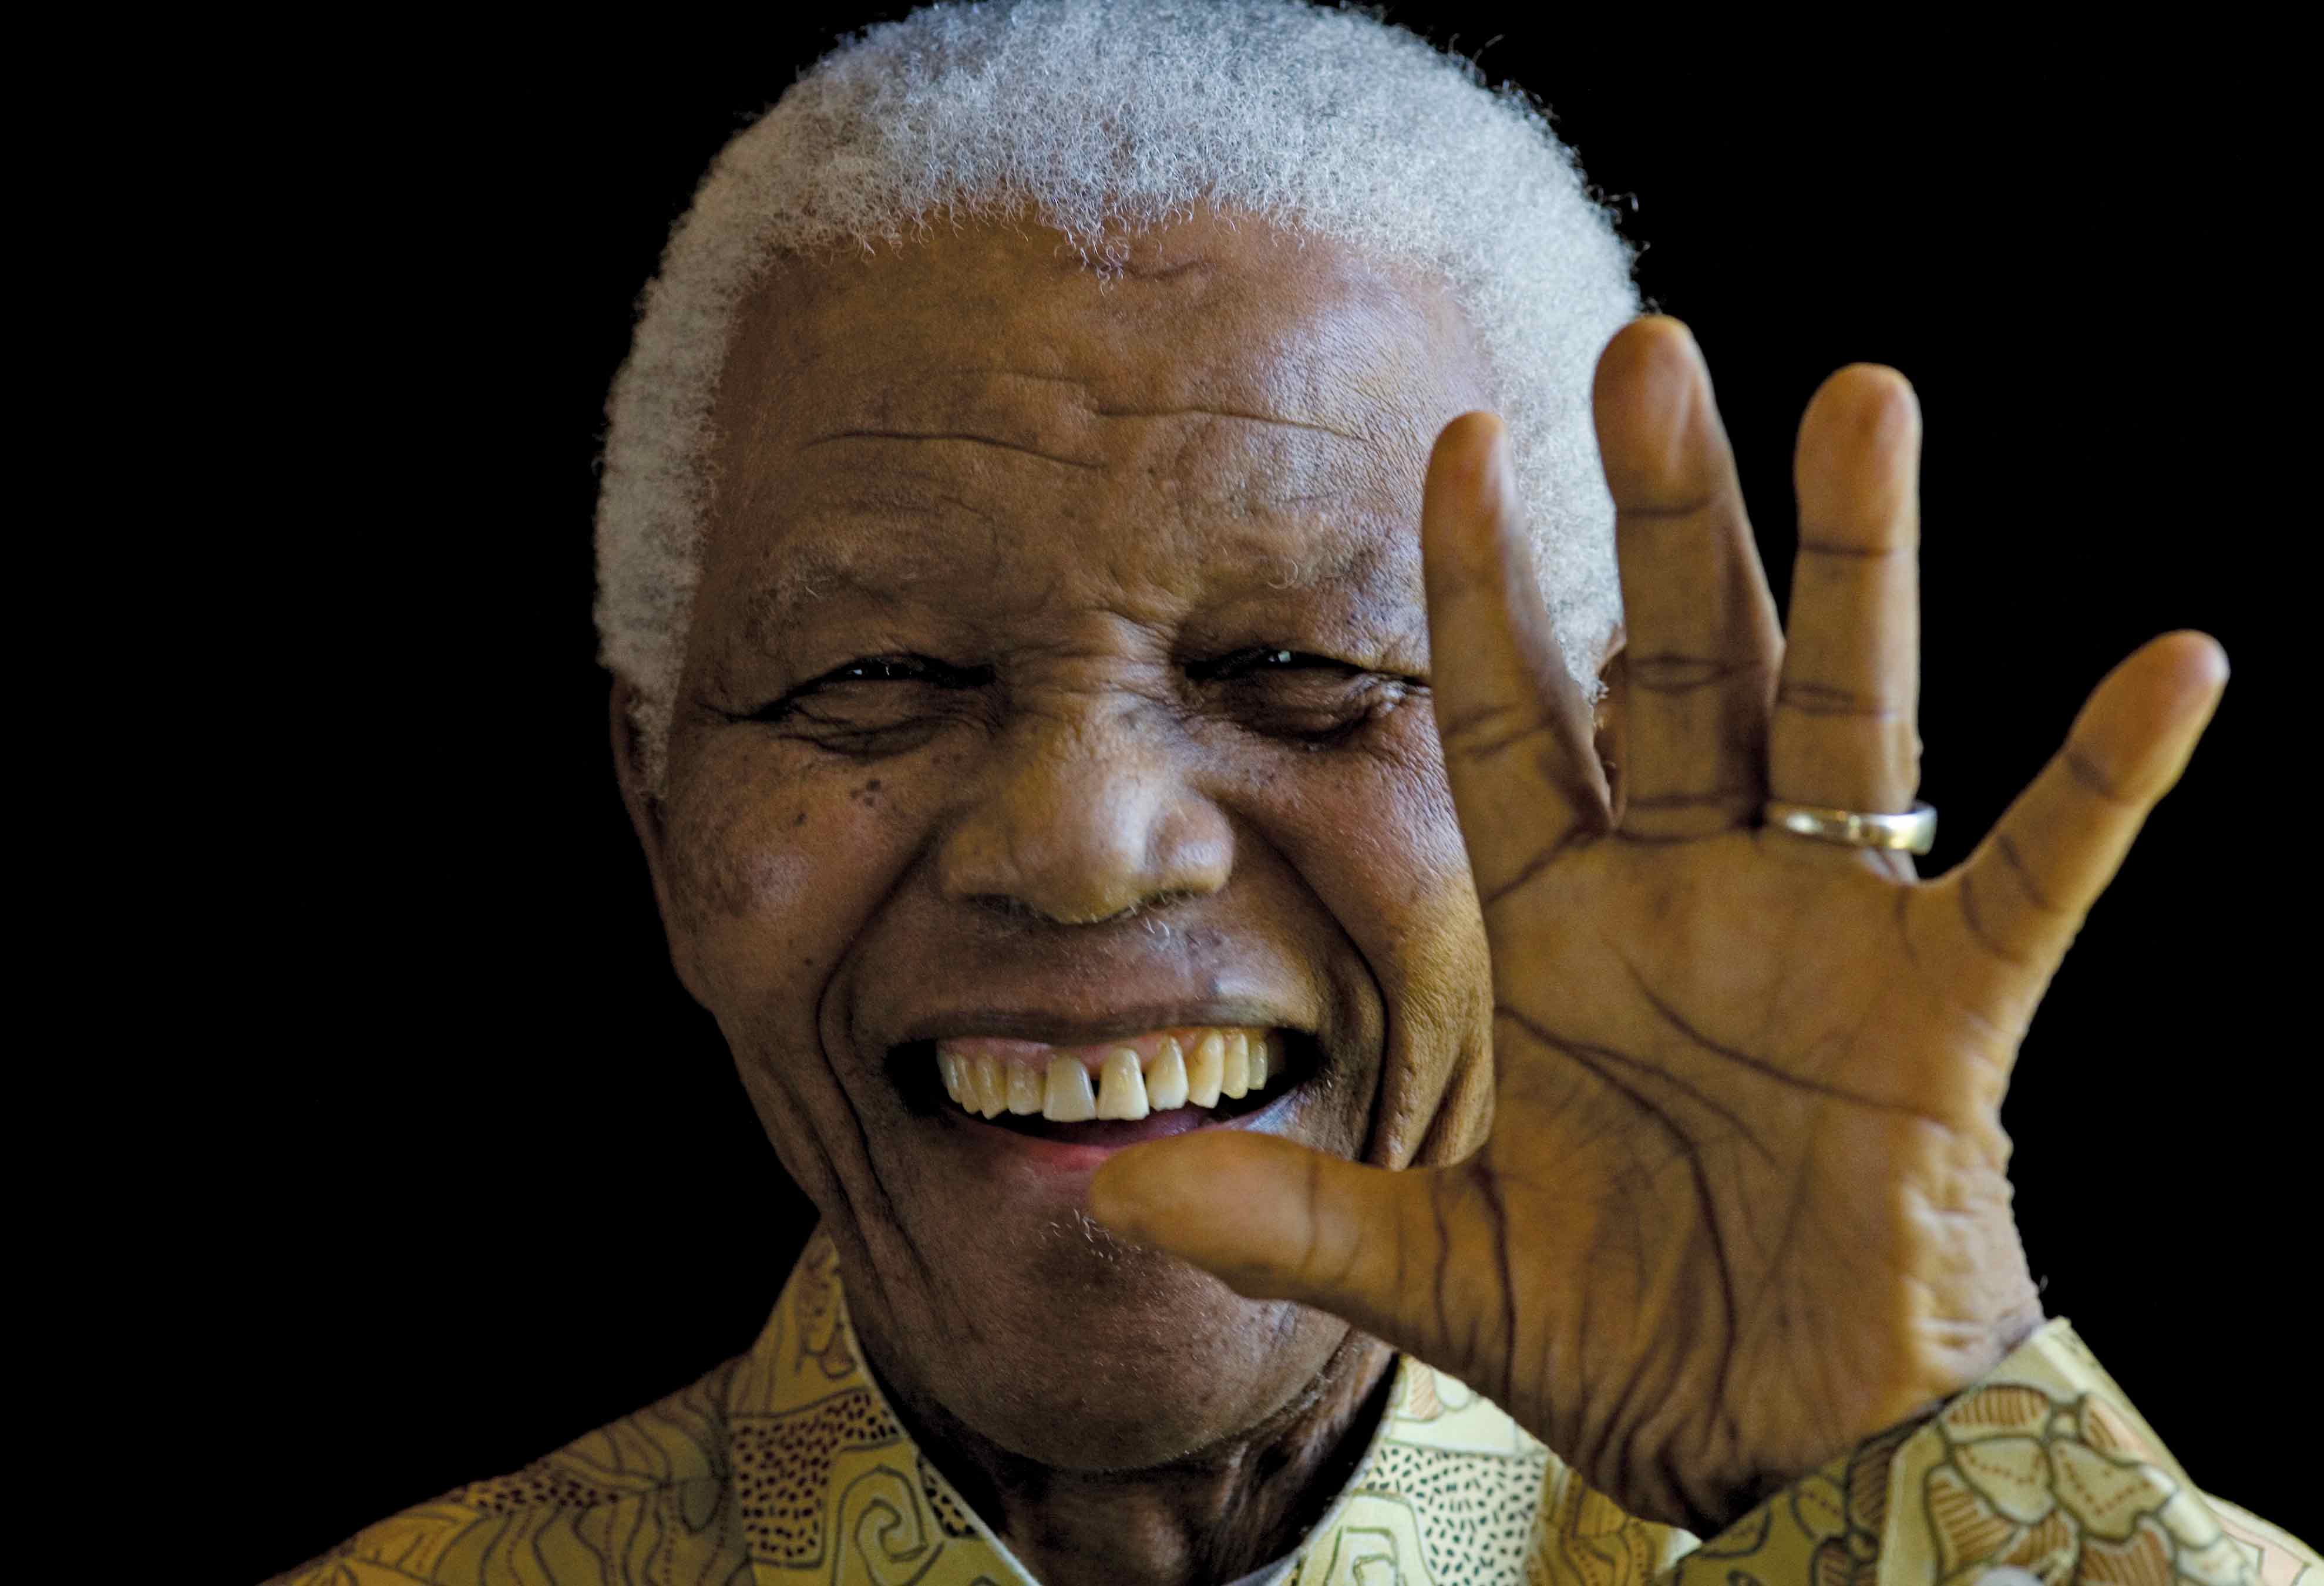 El mundo conmemora los 100 años de Nelson Mandela